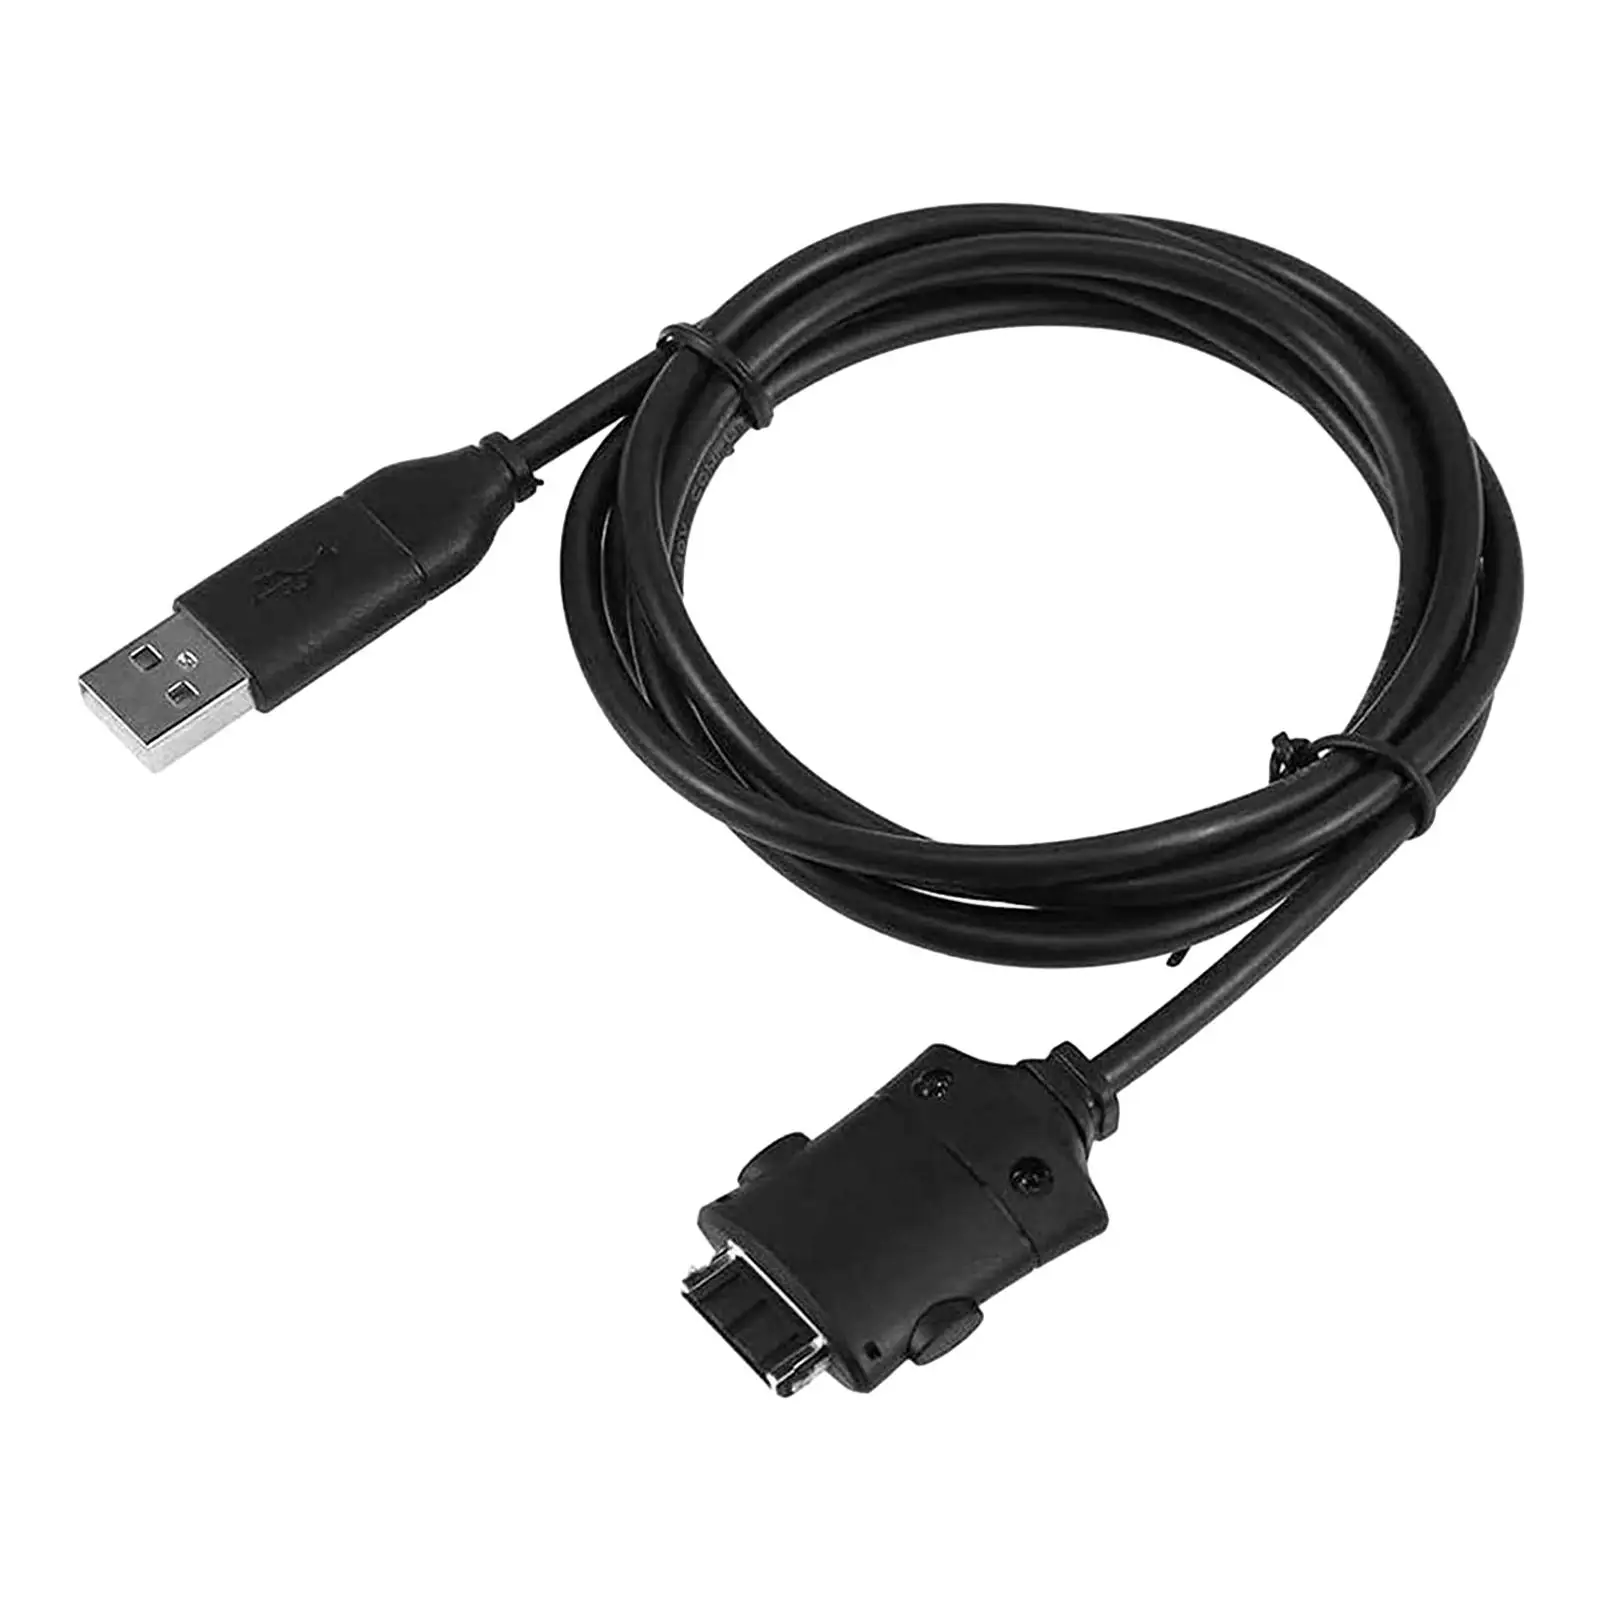 Suc-c2 USB Кабель Для Зарядки Данных Шнур Простой в Использовании Аксессуар Прочный Сменный Шнур для Передачи данных для Цифровой Камеры i85 L83T L70 i6 - 4